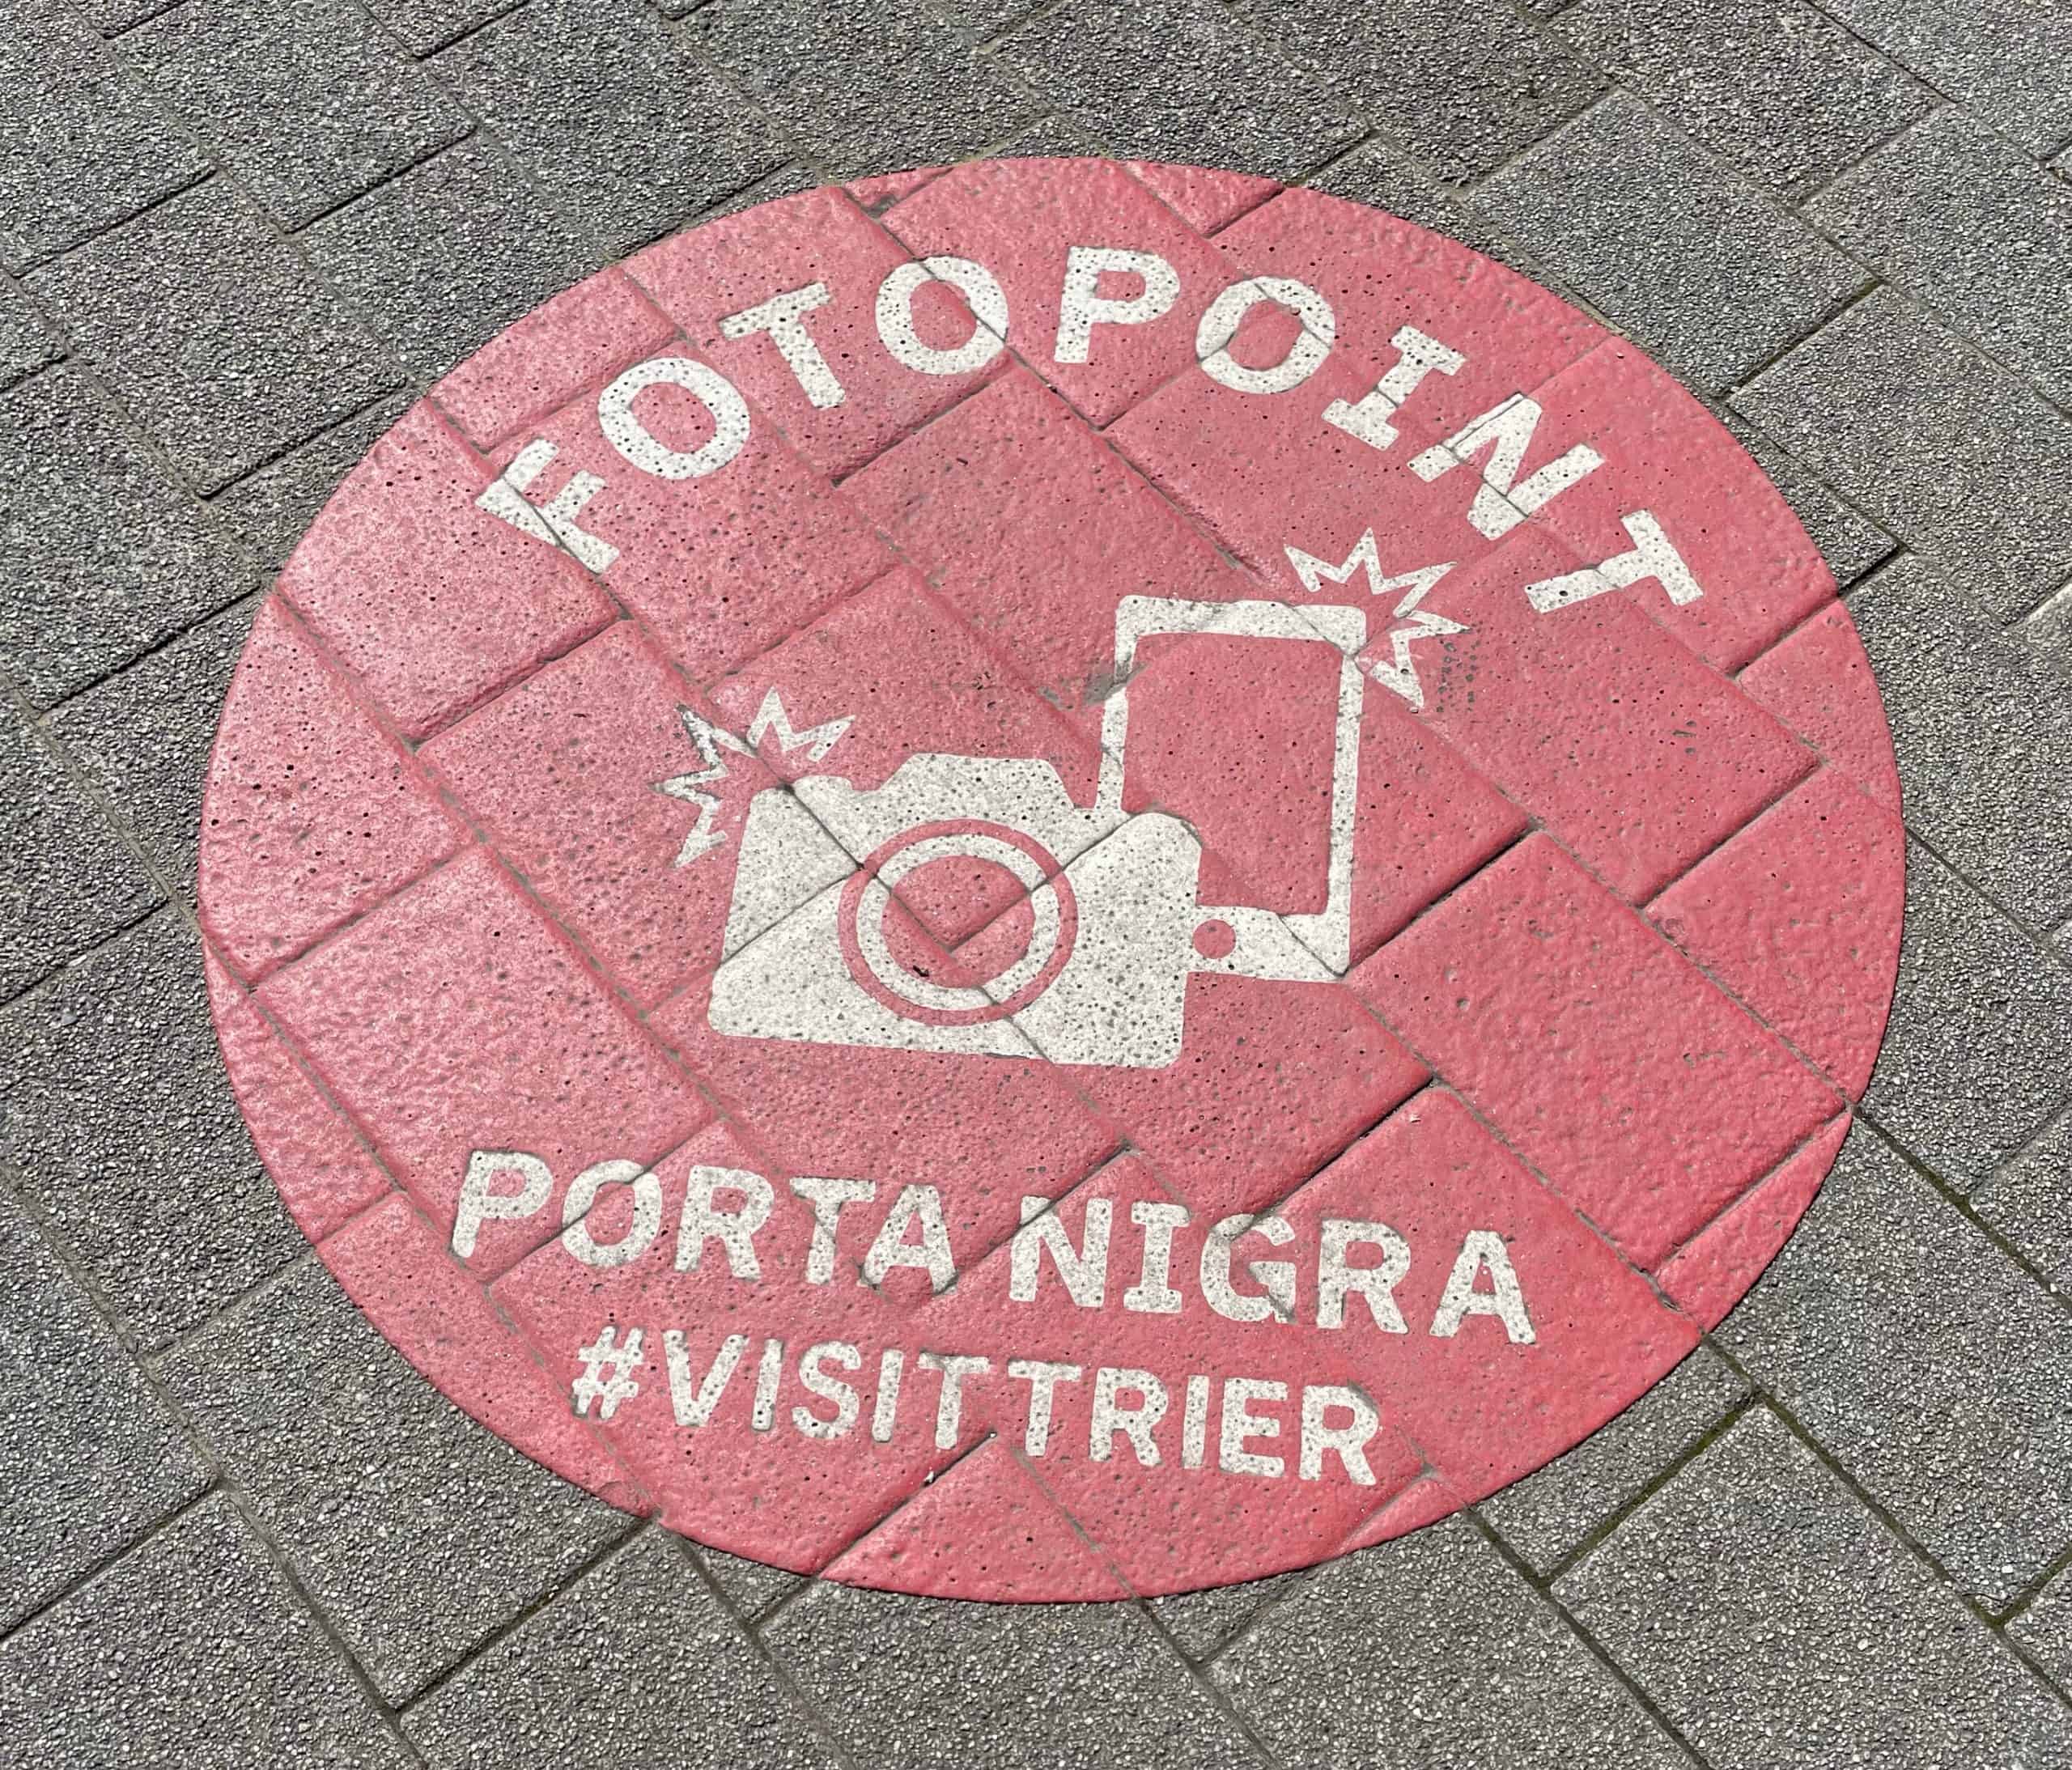 Fußbodenhinweiskreis, der den idealen Fotopunkt für die Porta Nigra angibt